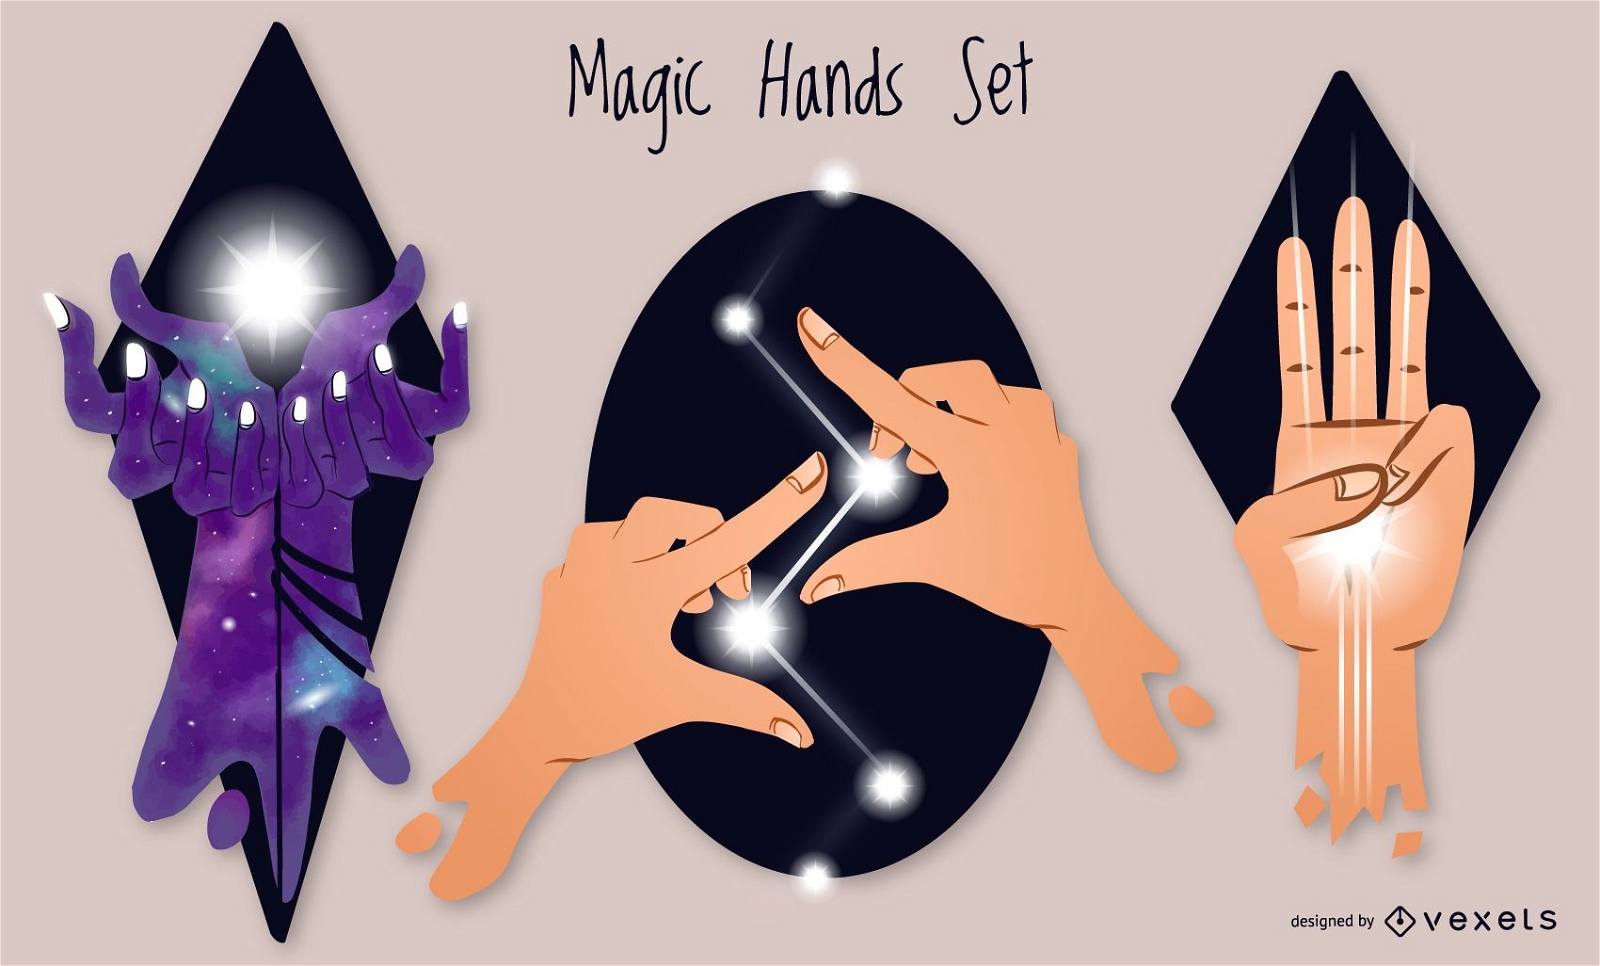 Magic hands set